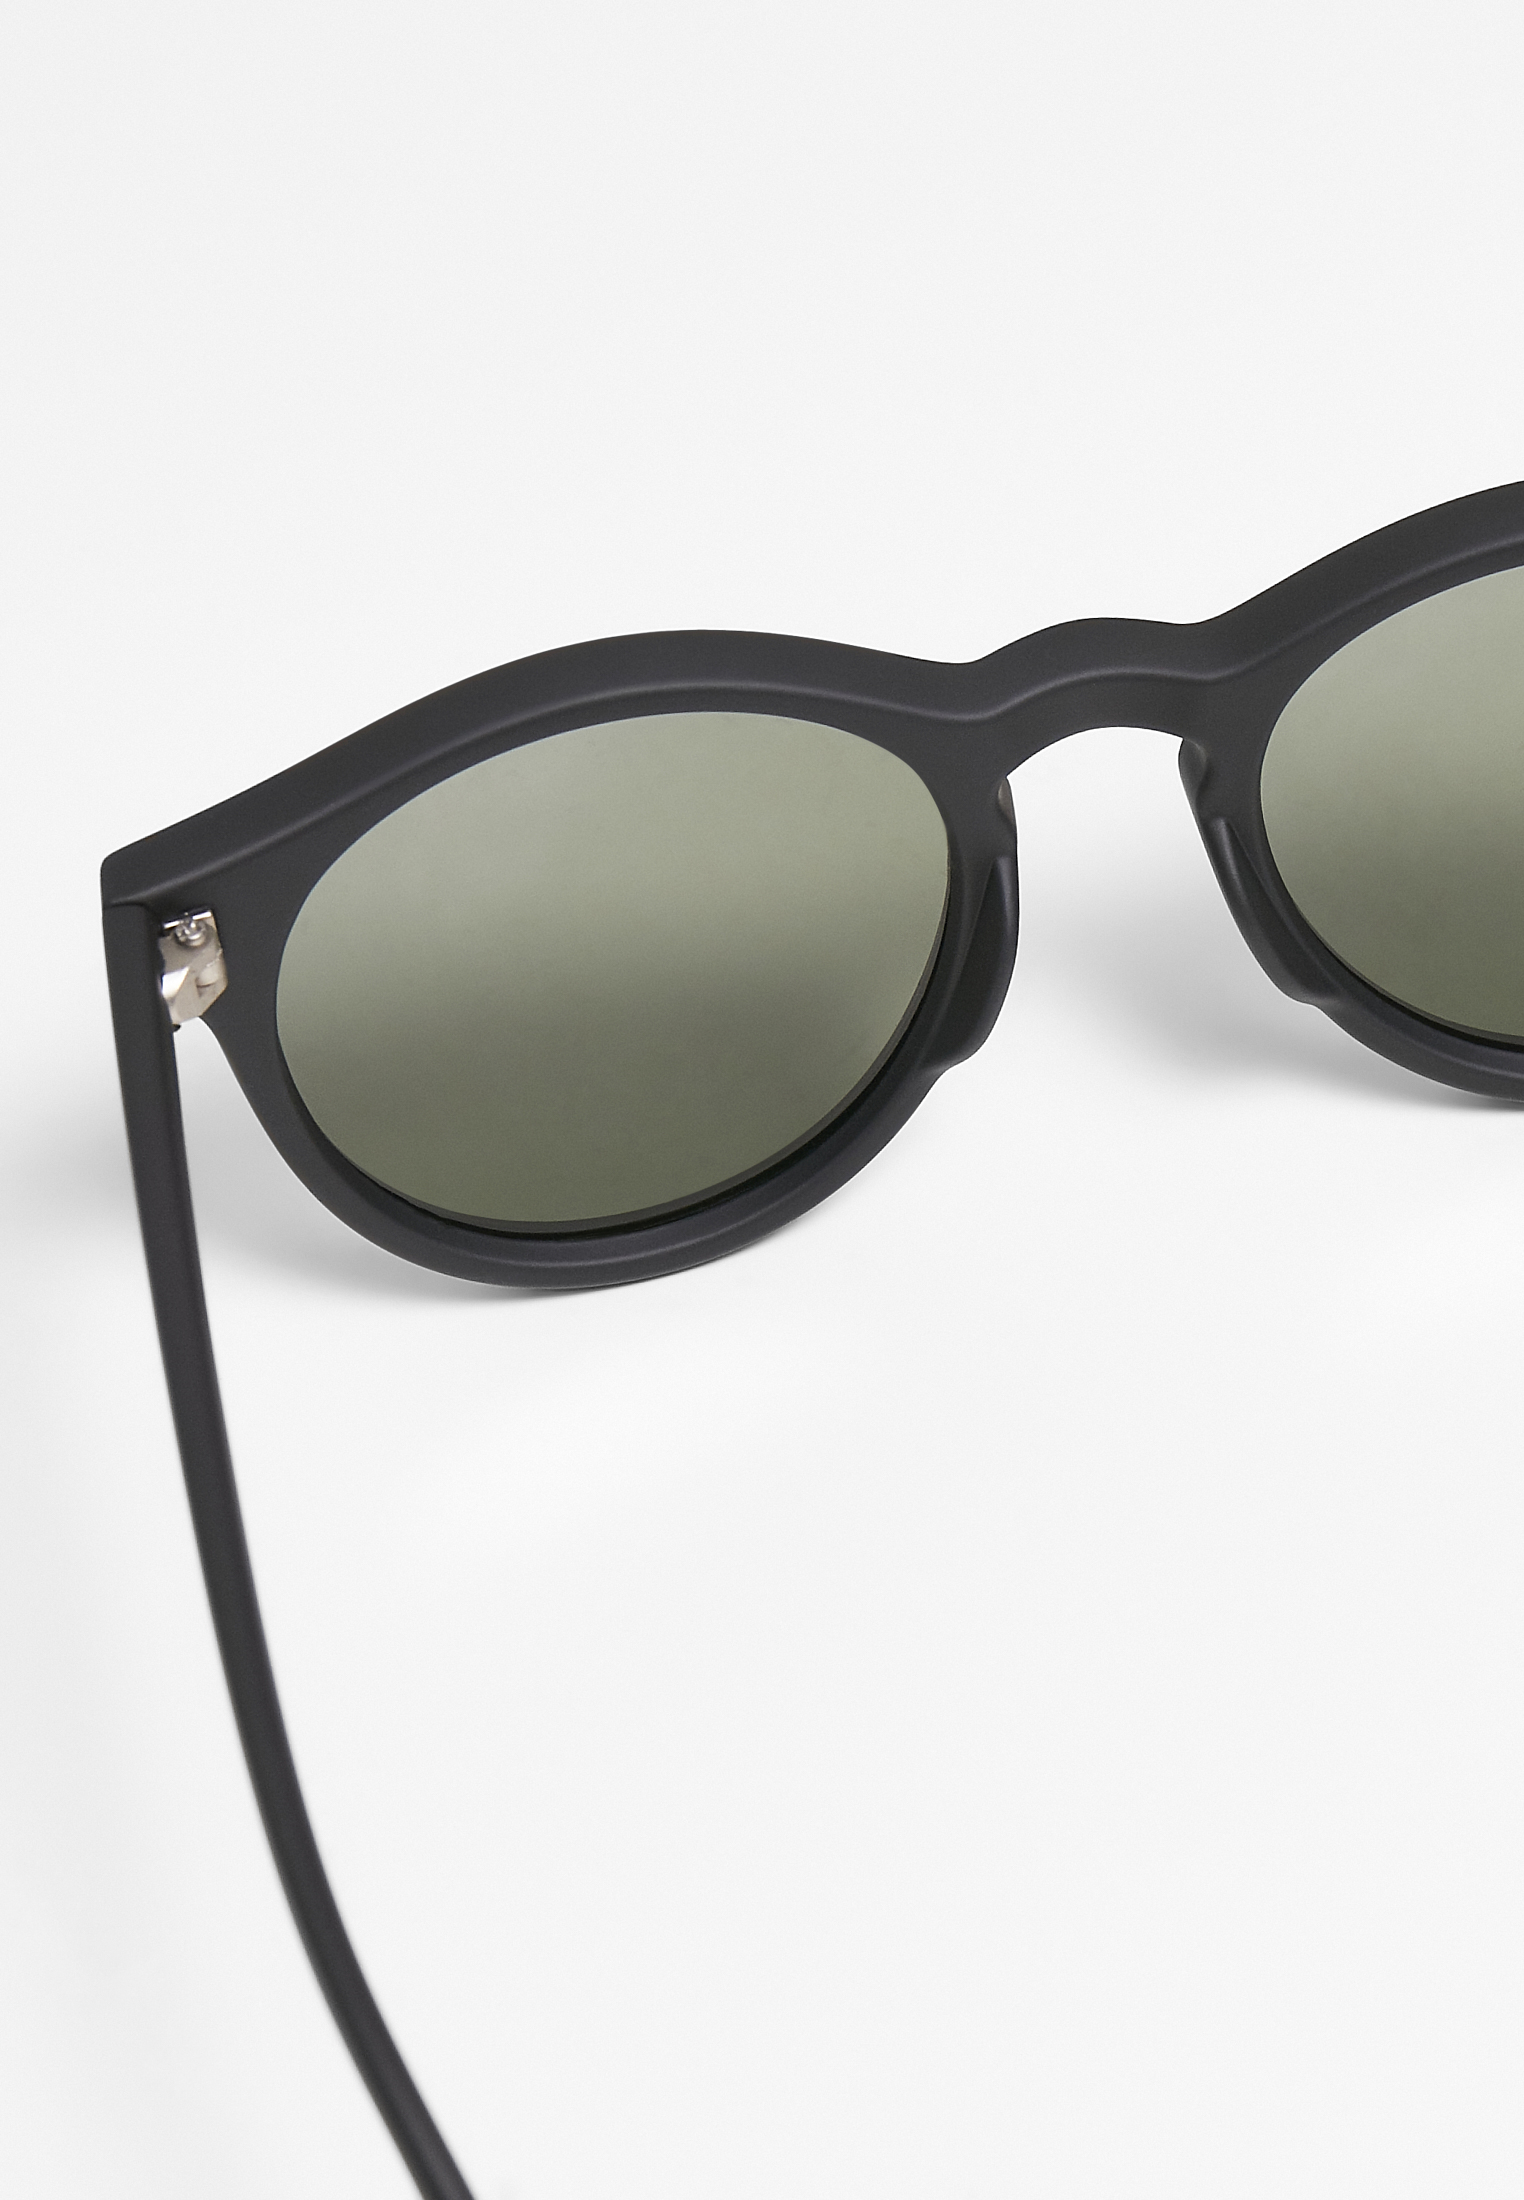 Sonnenbrillen Sunglasses Sunrise UC in Farbe black/green